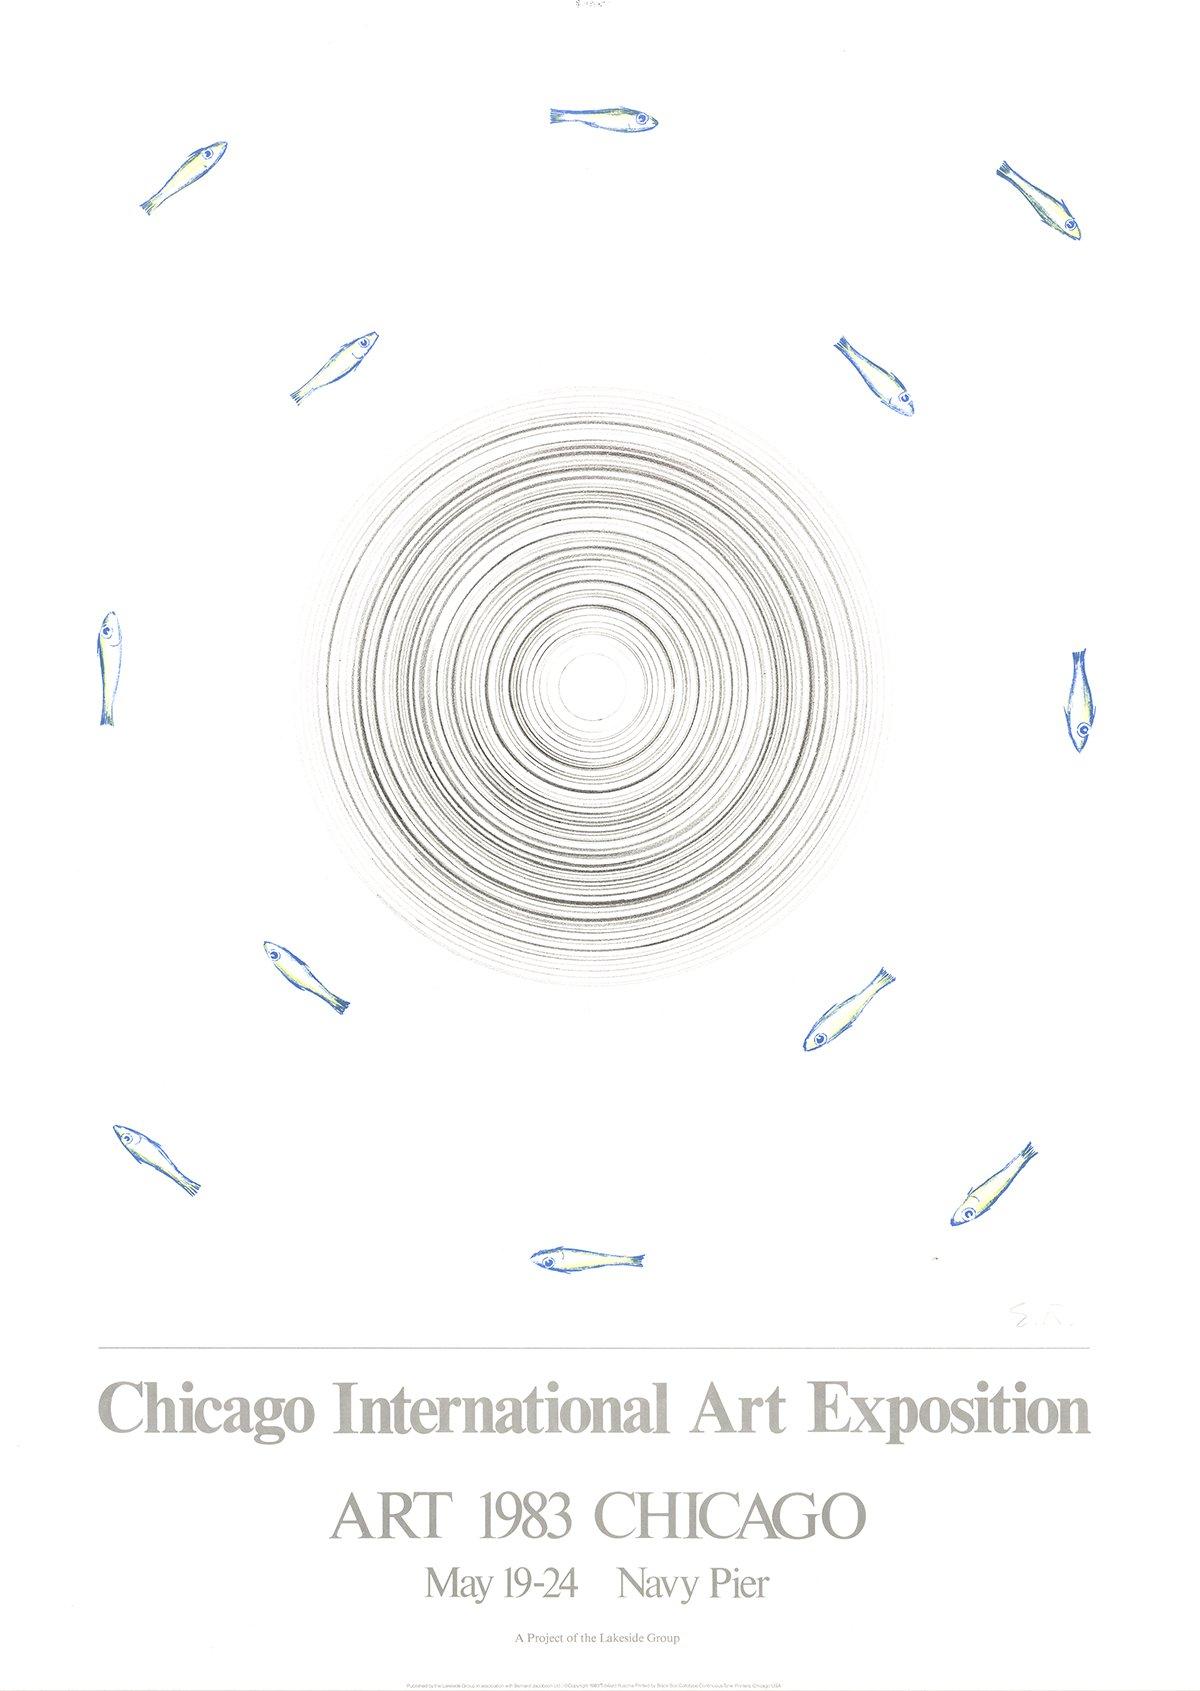 1983 After Edward Ruscha 'Chicago International Art Exposition' Pop Art - Print by Ed Ruscha